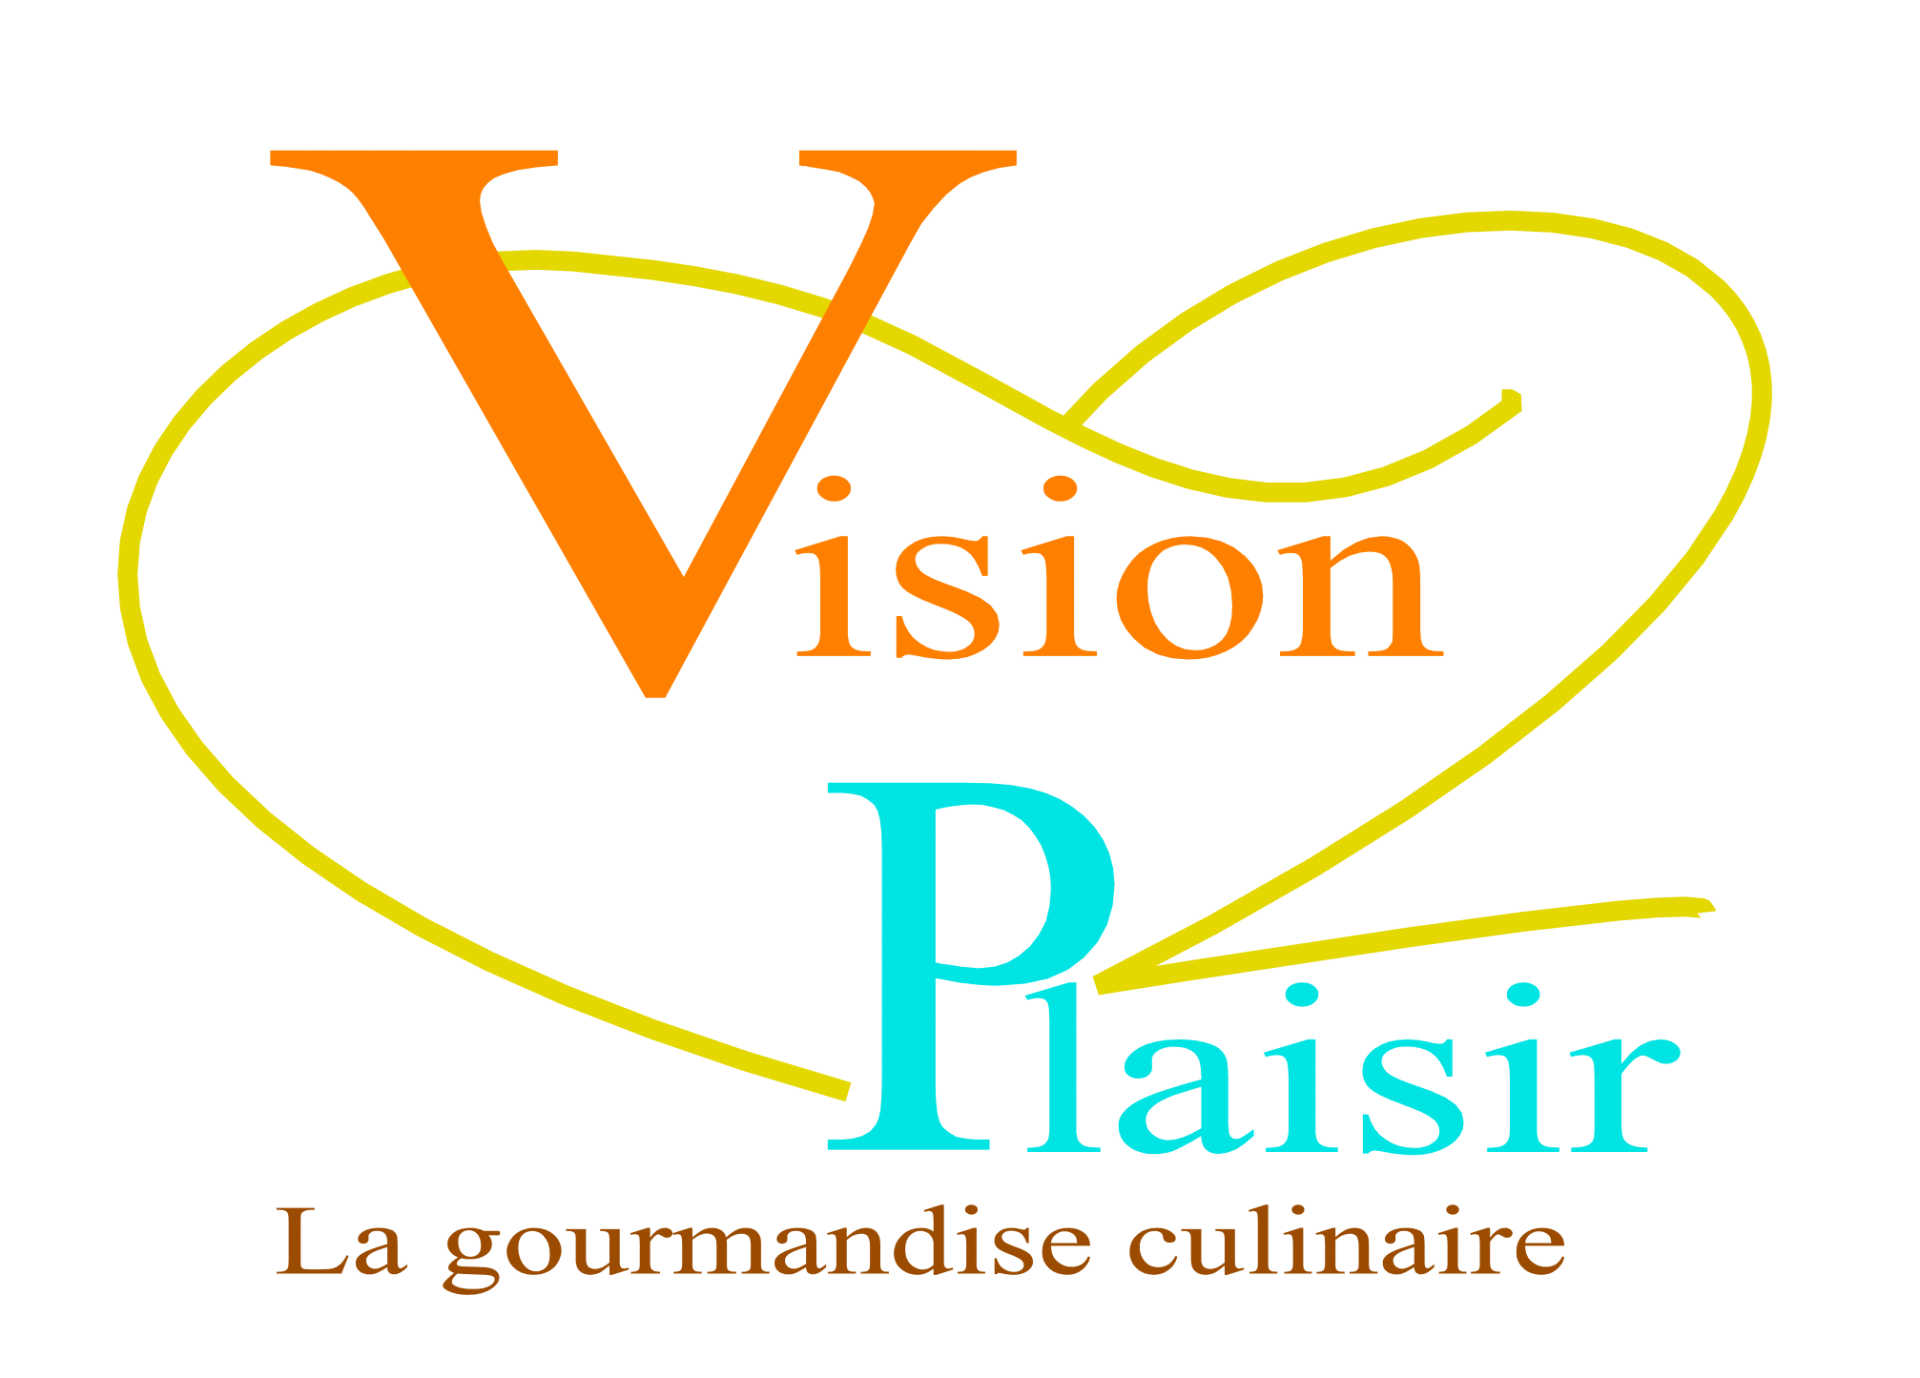 Vision plaisir logo hd